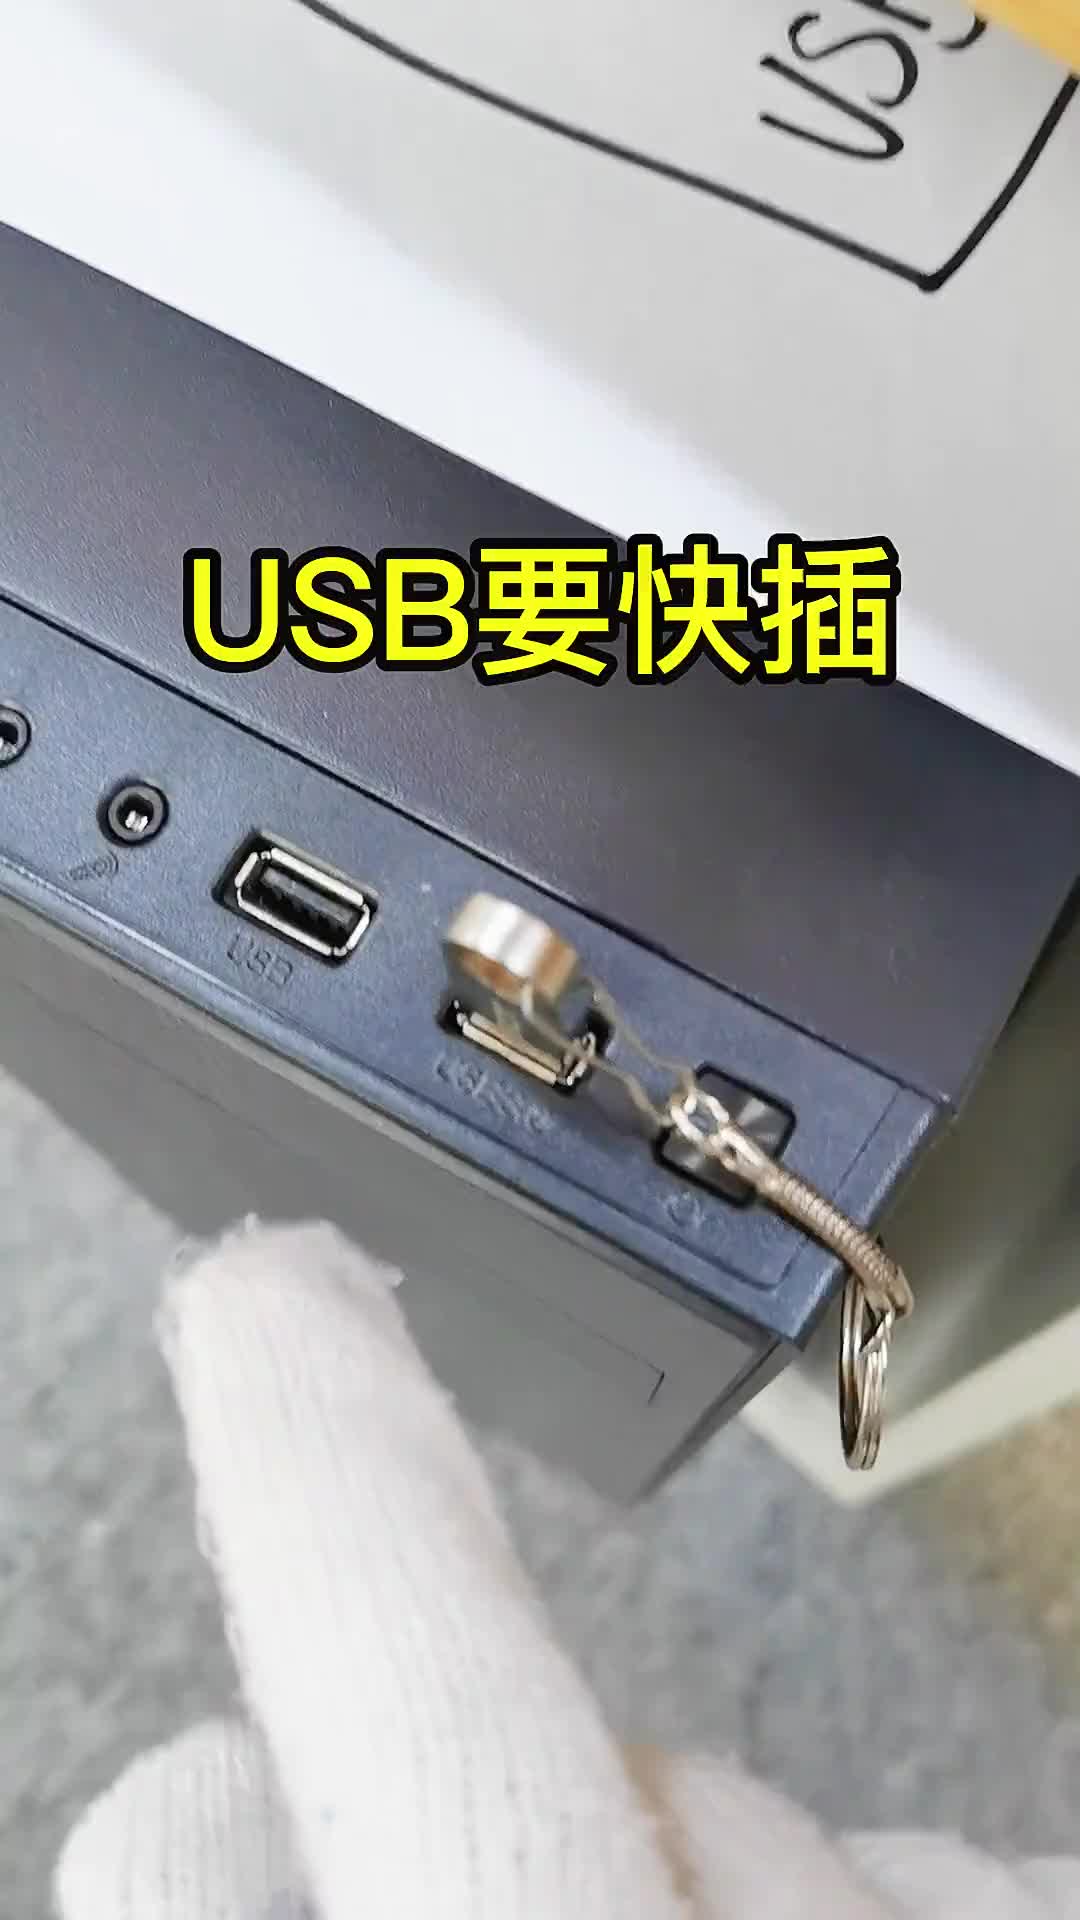 如何让USB3.0传输速度变快，考验手速的时候到了！#涨知识 #科技 #电脑  